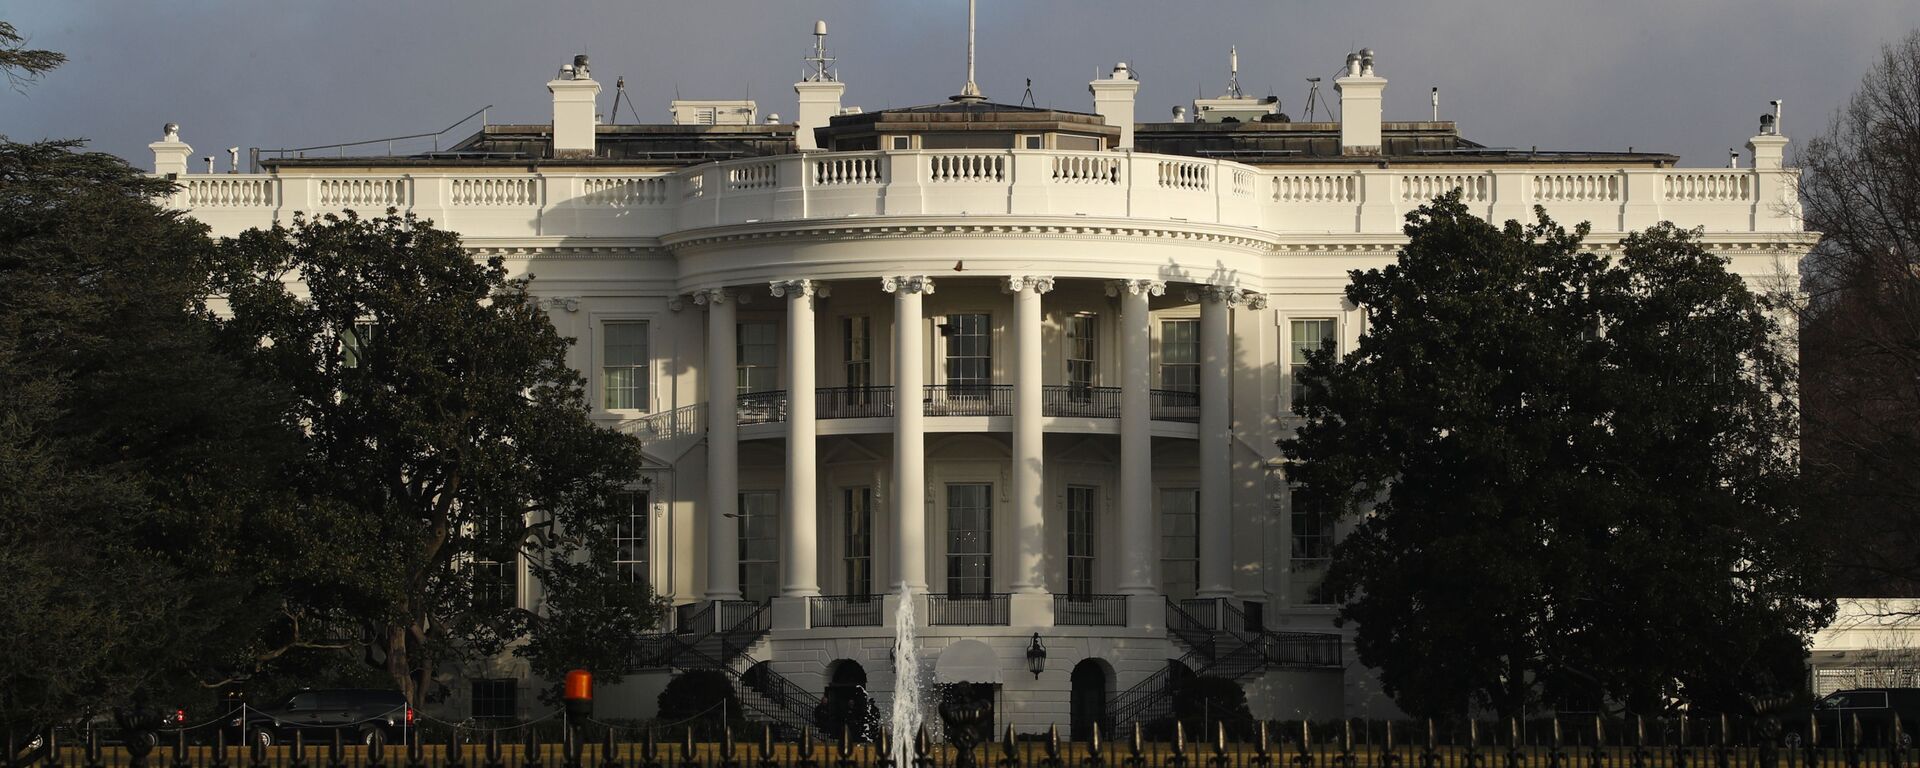 Официальная резиденция президента США - Белый дом - Sputnik Армения, 1920, 11.12.2021